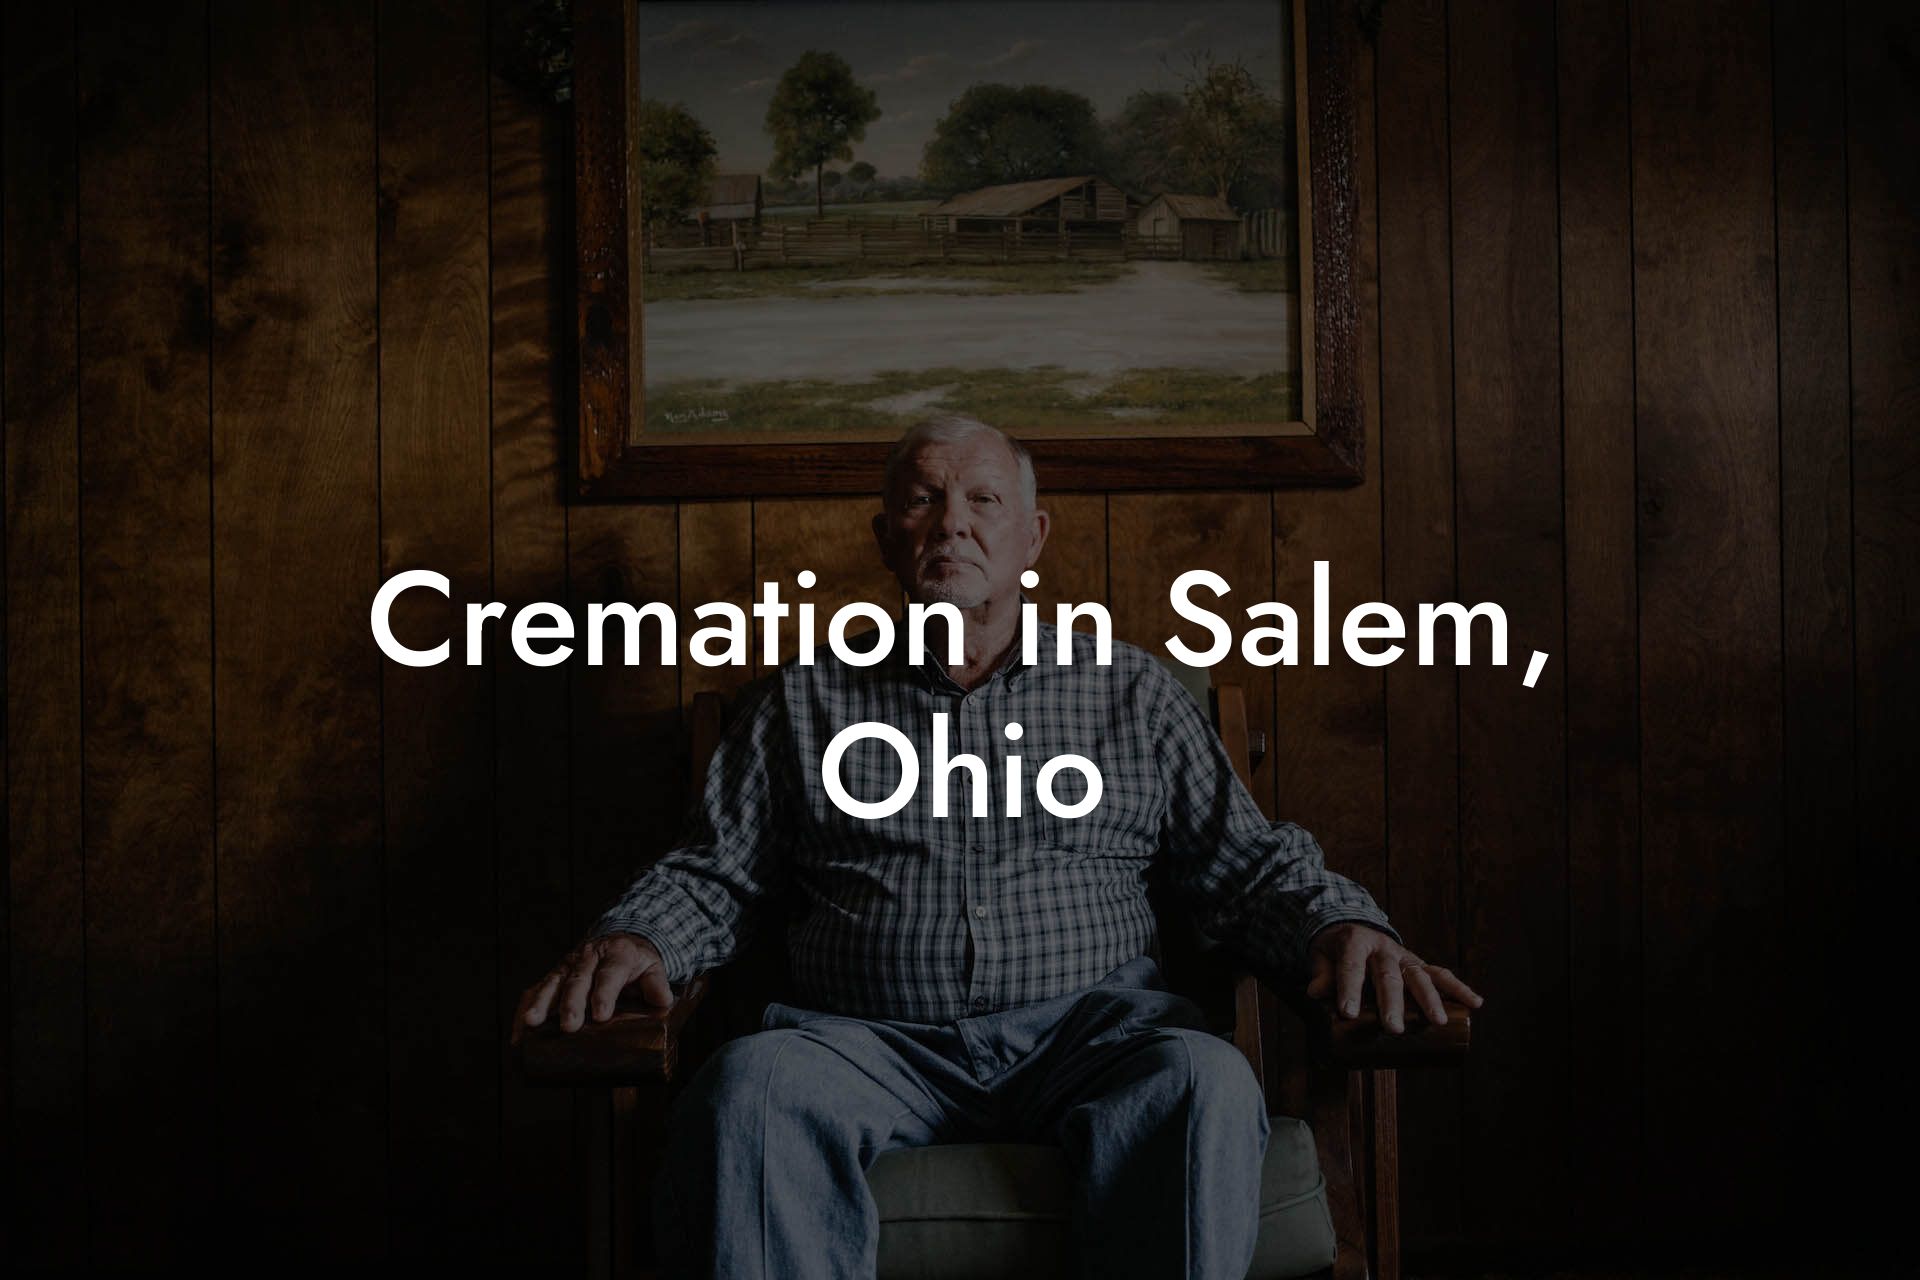 Cremation in Salem, Ohio